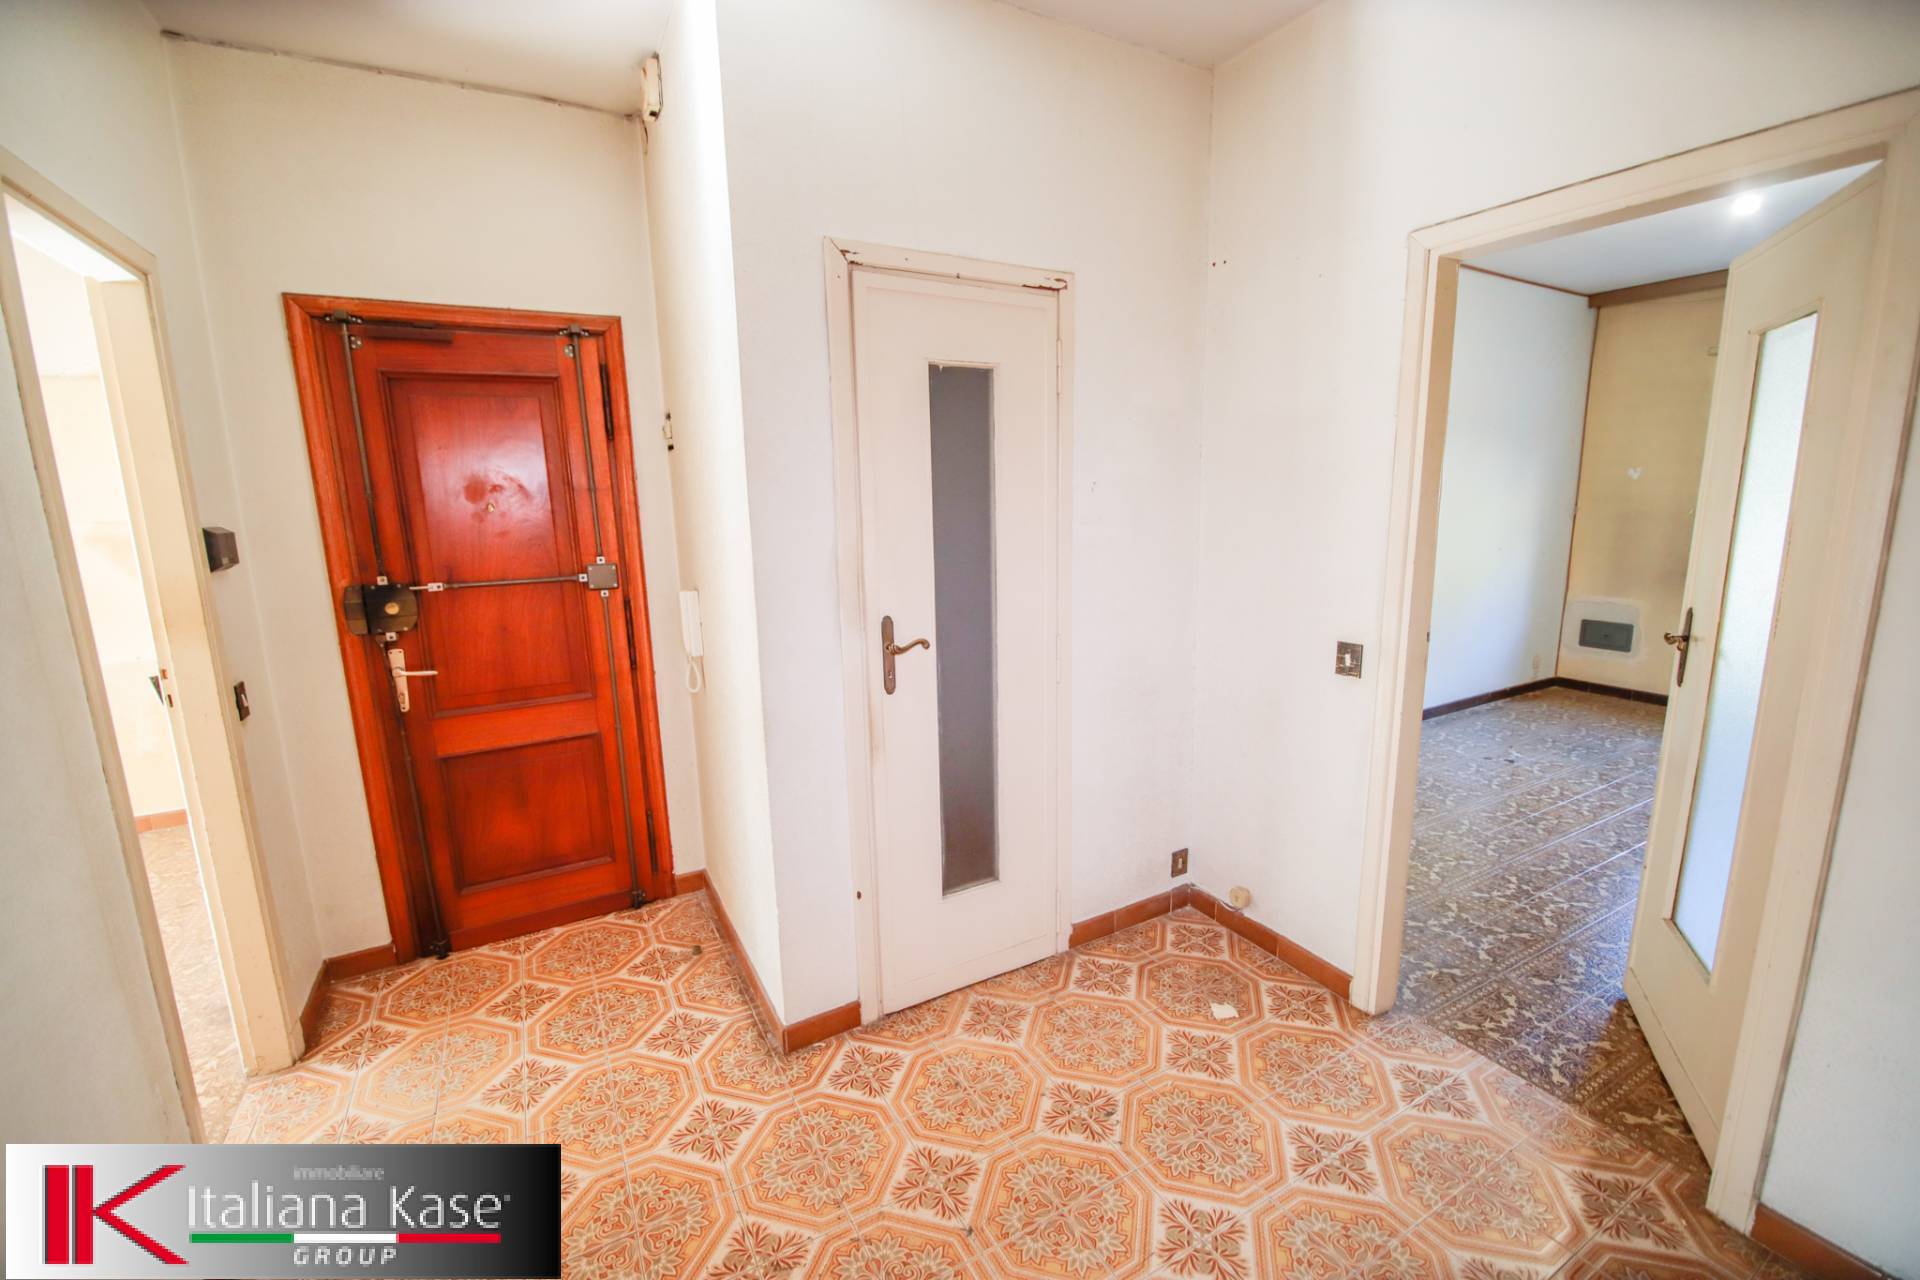 Appartamento in vendita a Caluso, 4 locali, zona Località: Caluso, prezzo € 32.000 | PortaleAgenzieImmobiliari.it